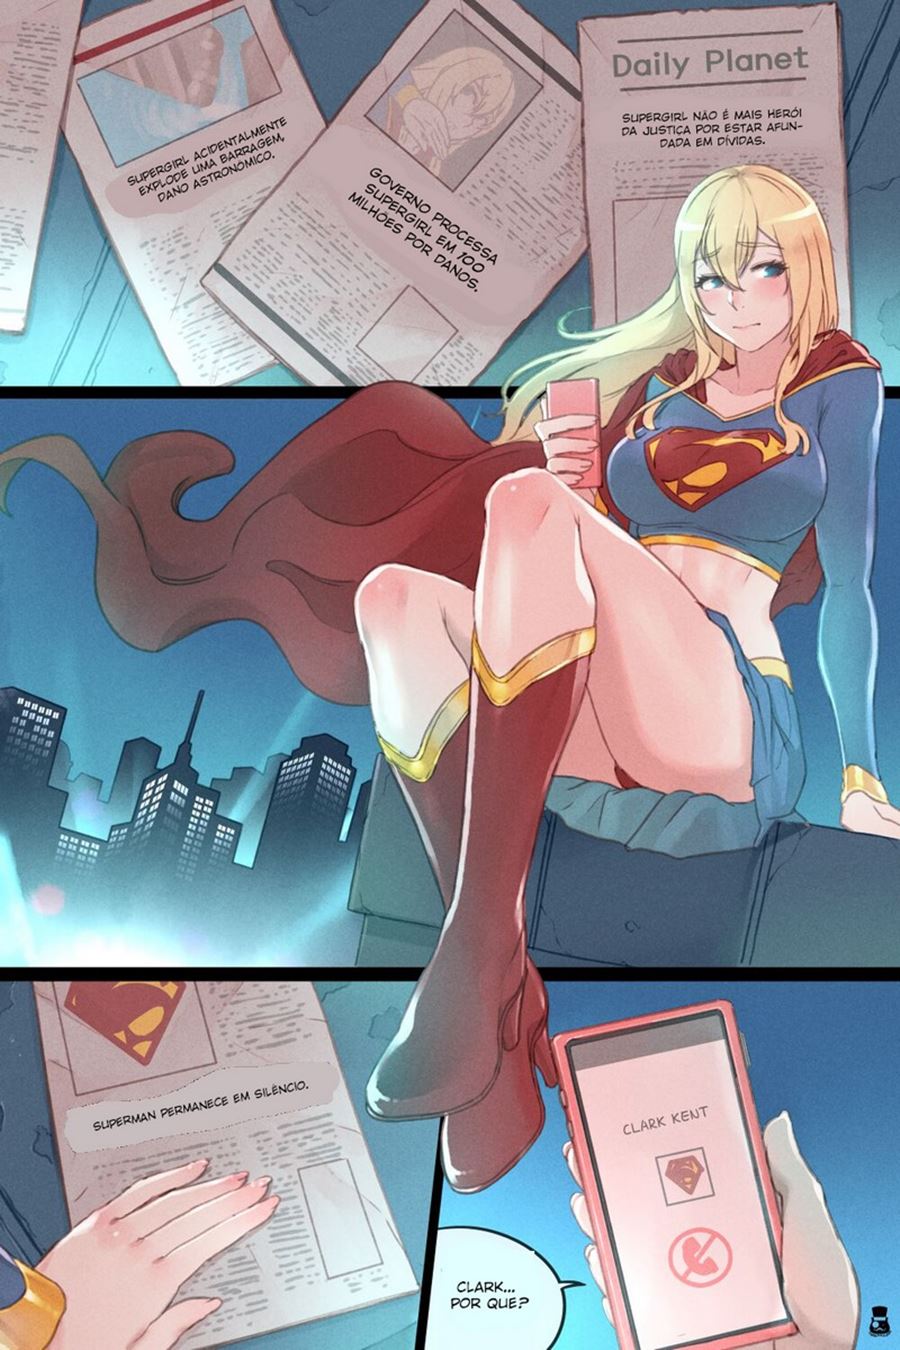 Supergirl fodendo com um macho da rua